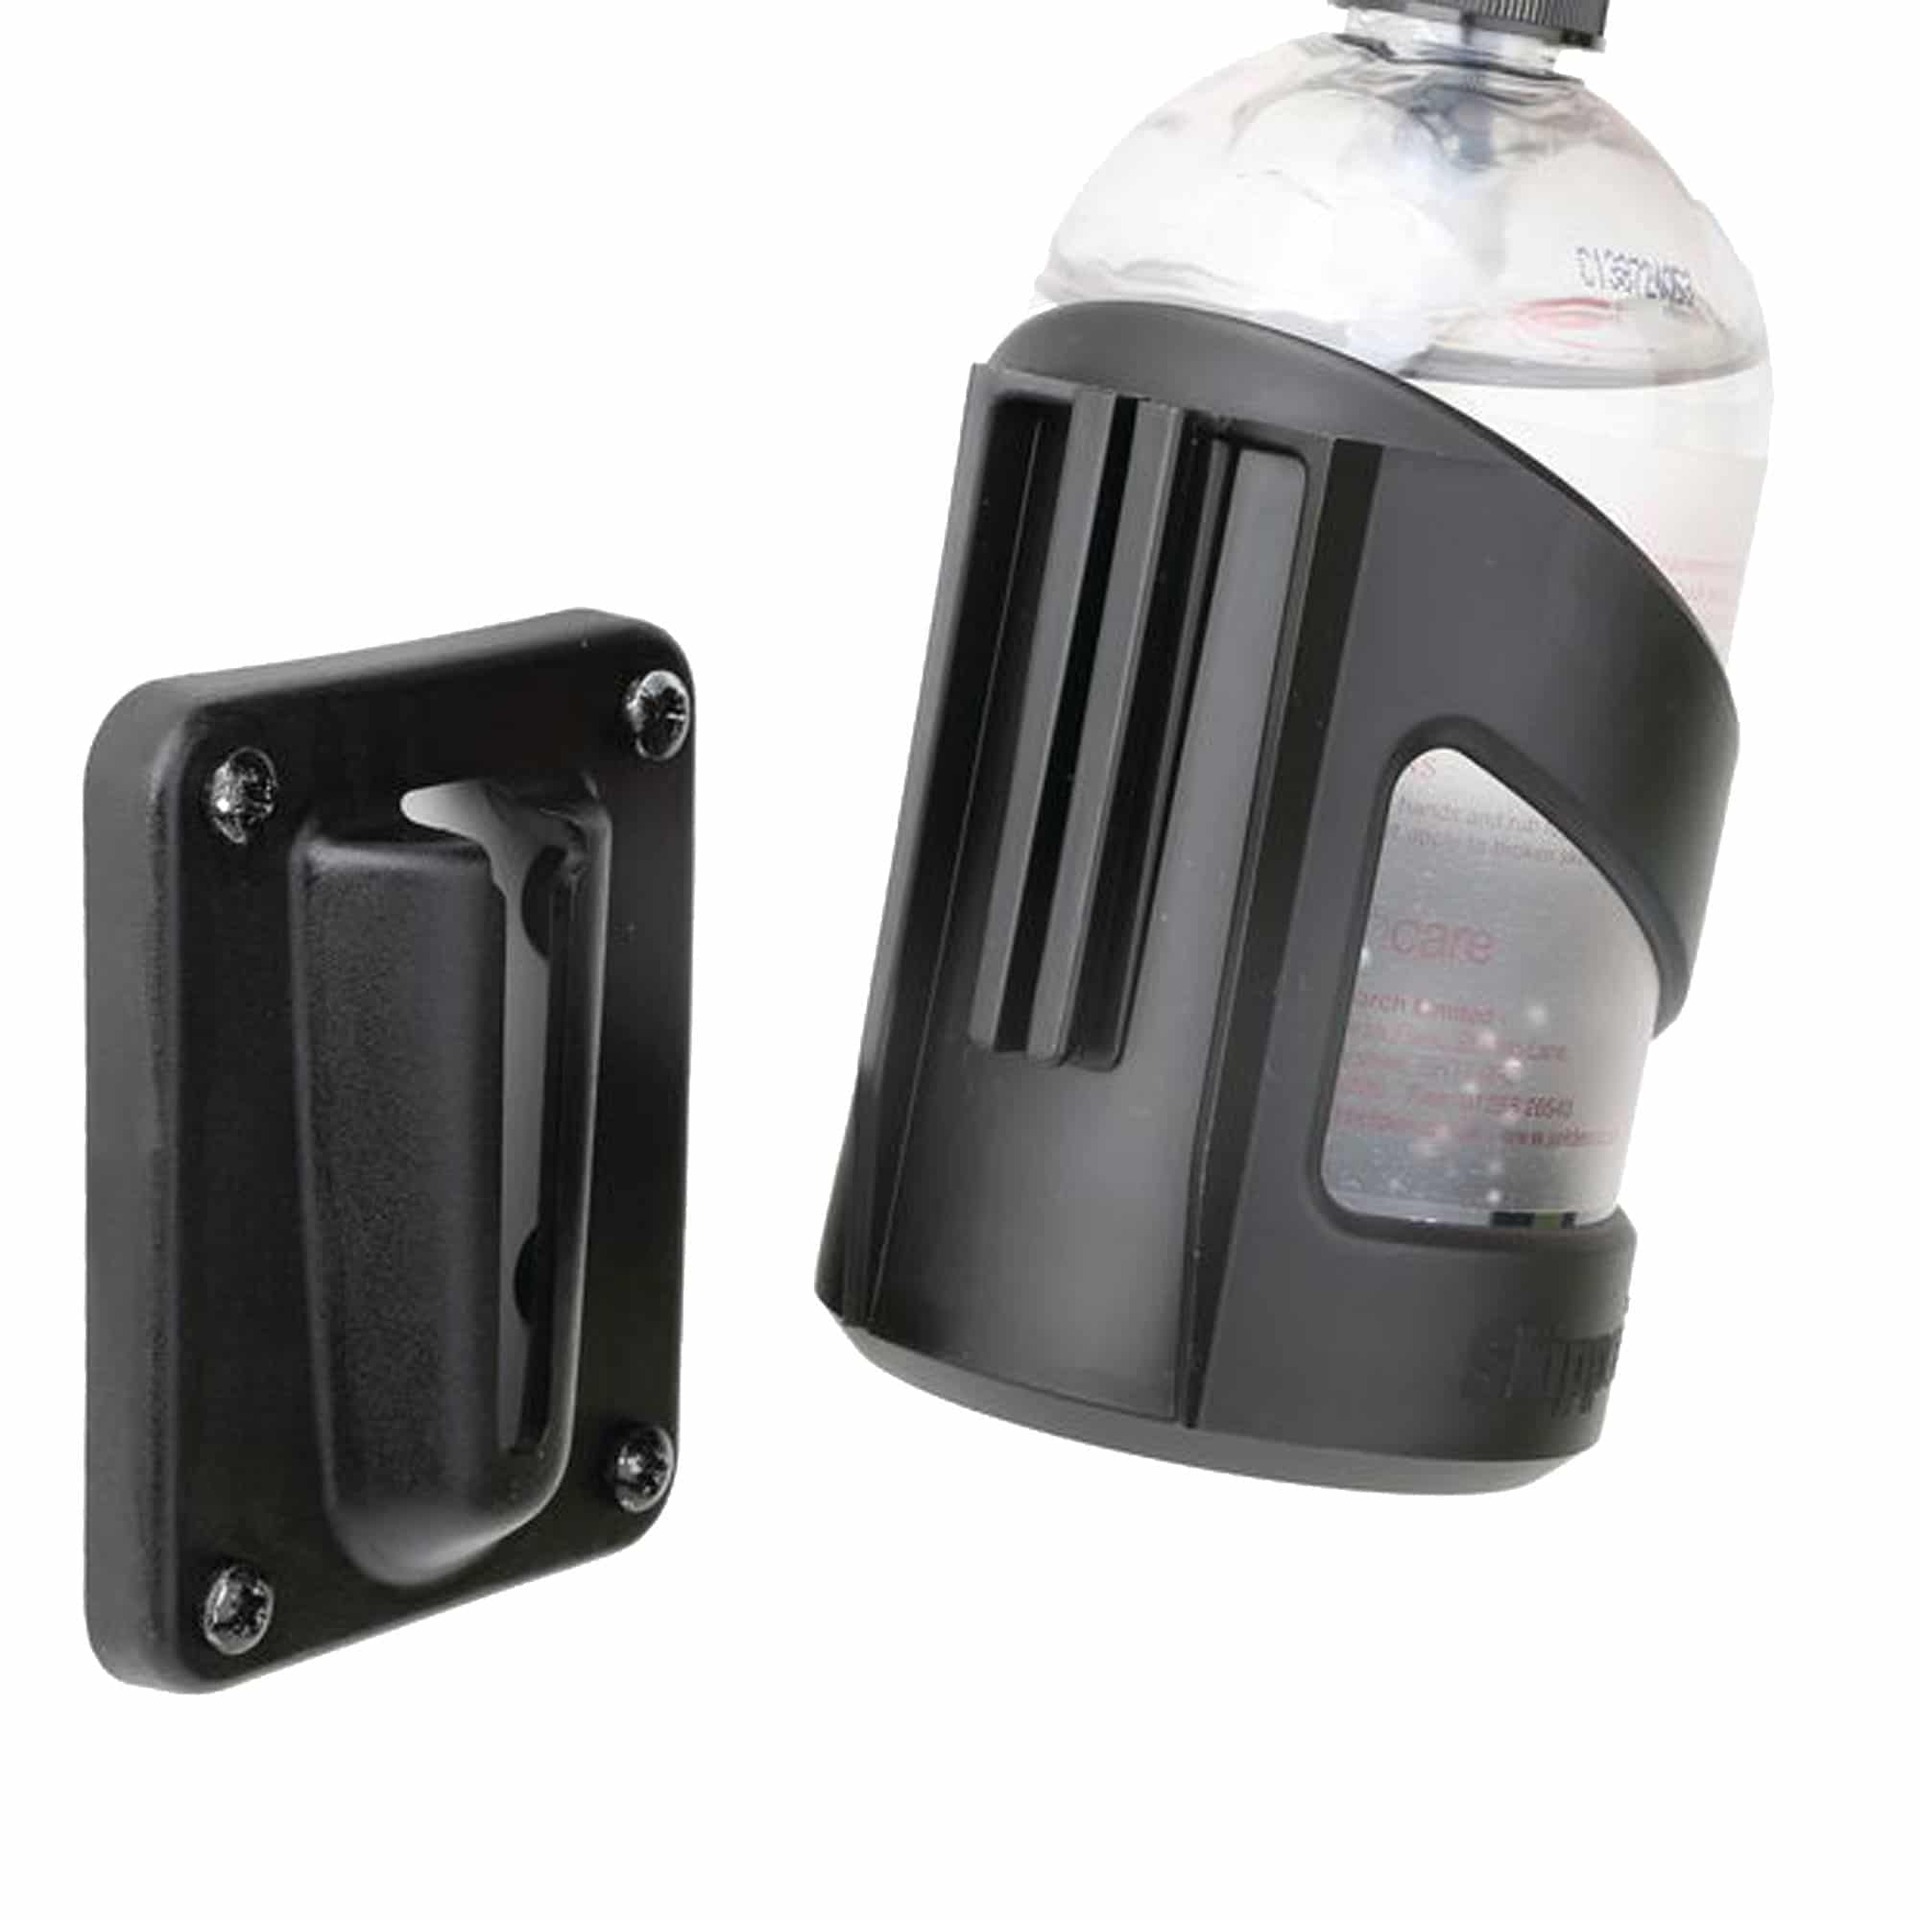 Disinfectant liquid dispenser holder